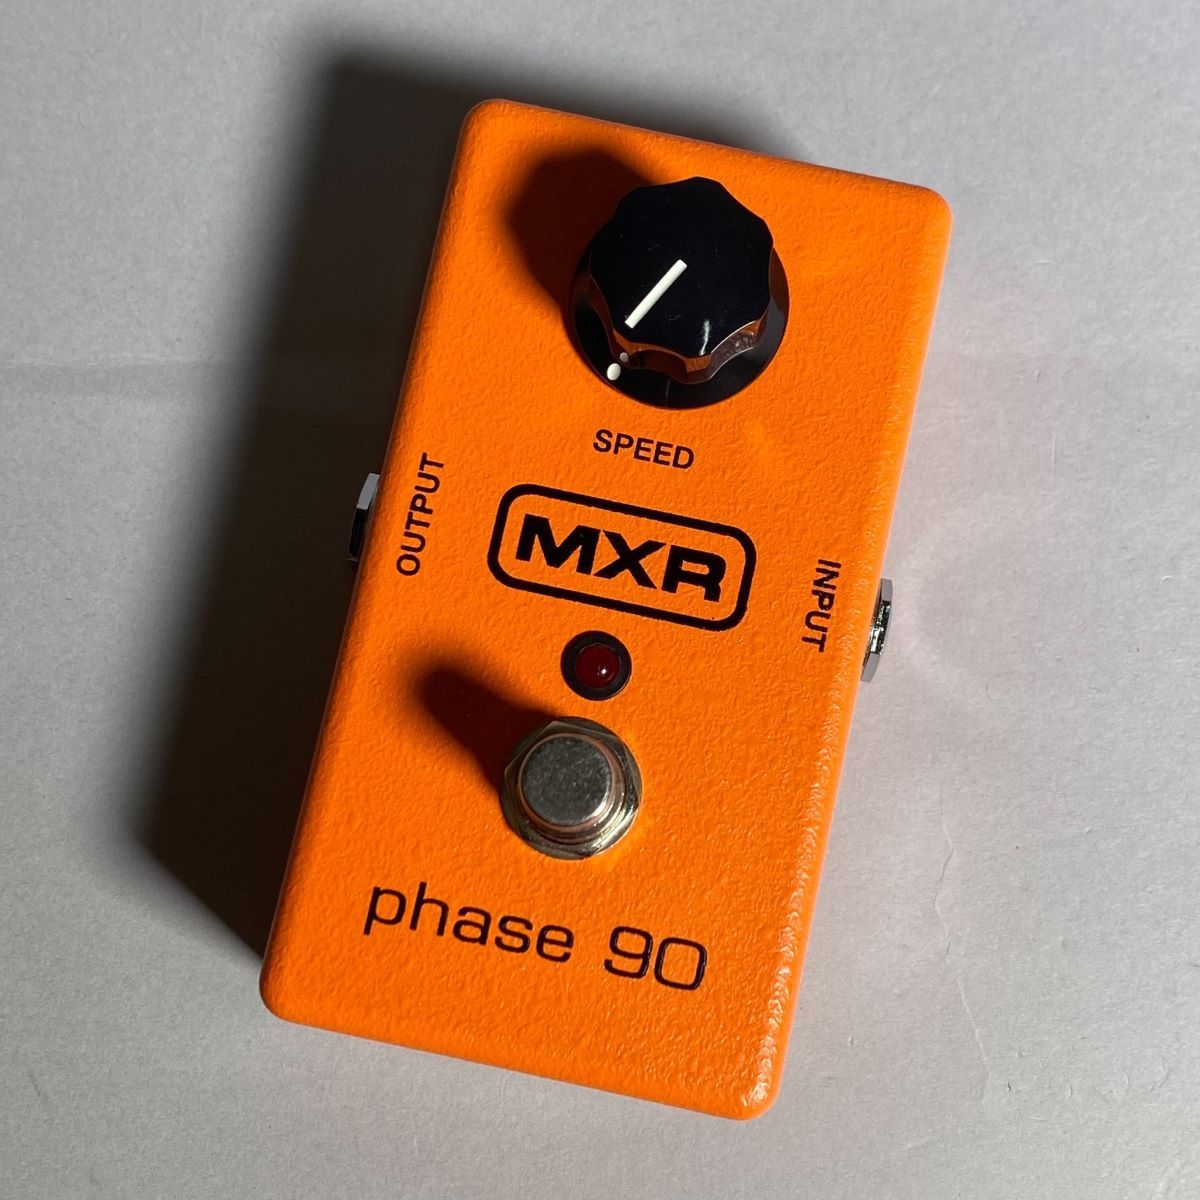 MXR Phase 90 M101